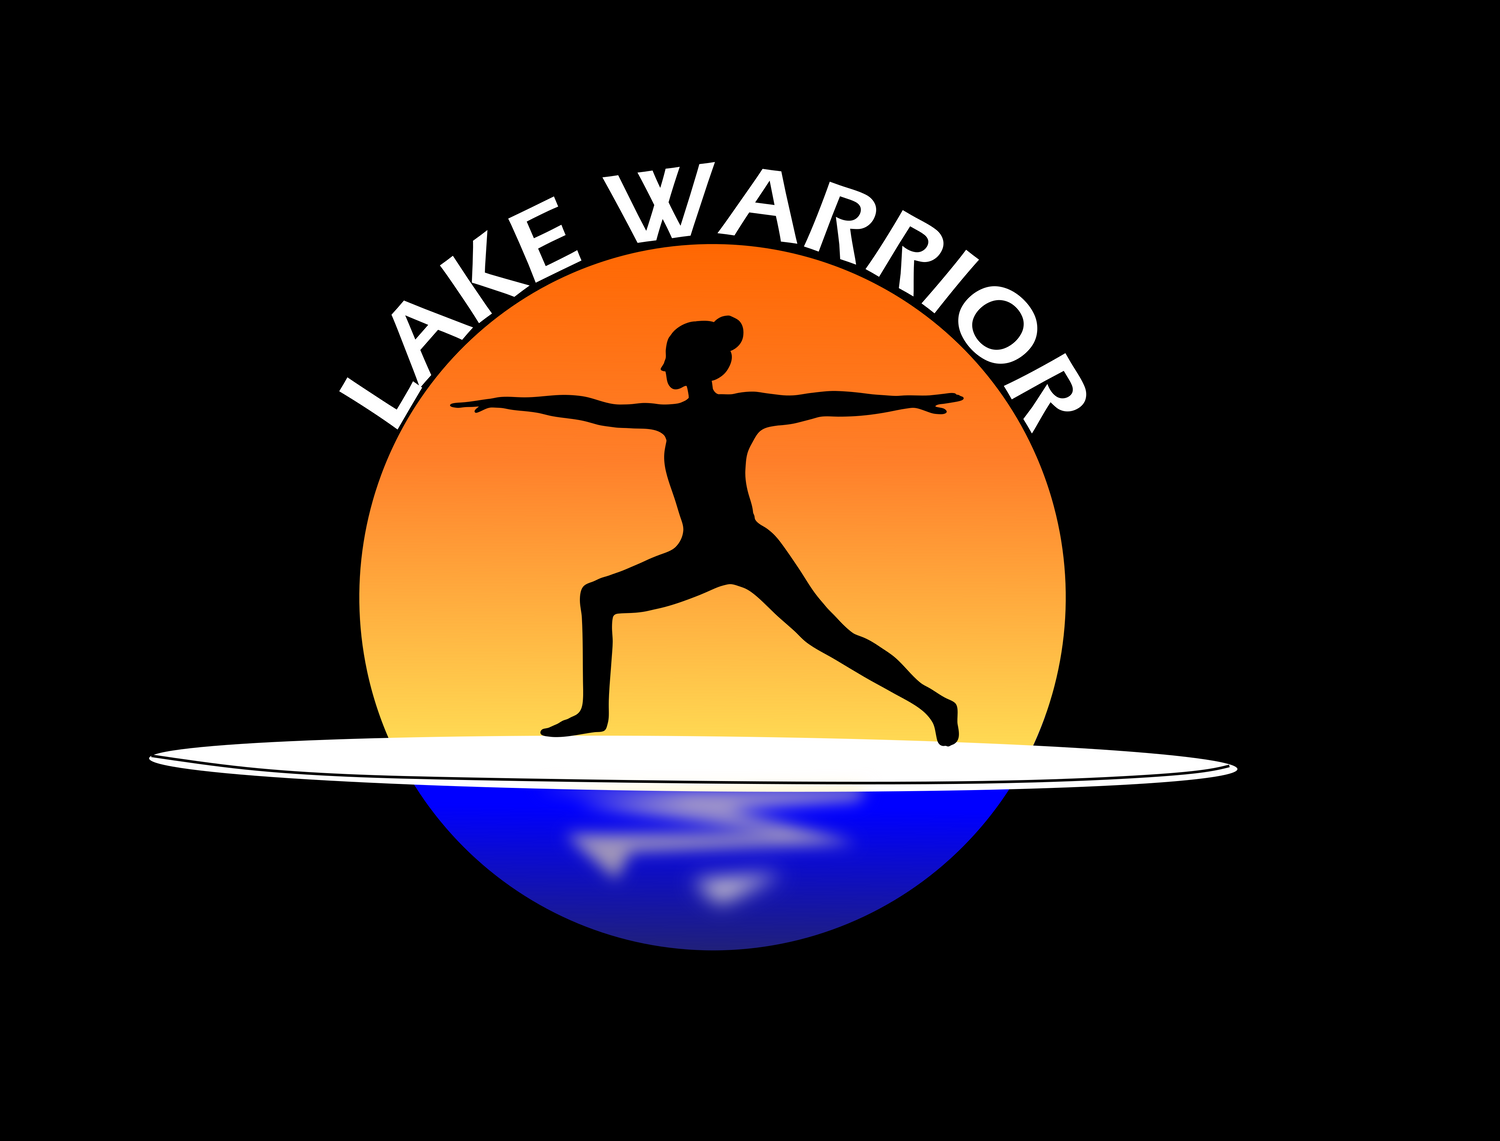 sunset lake warrior